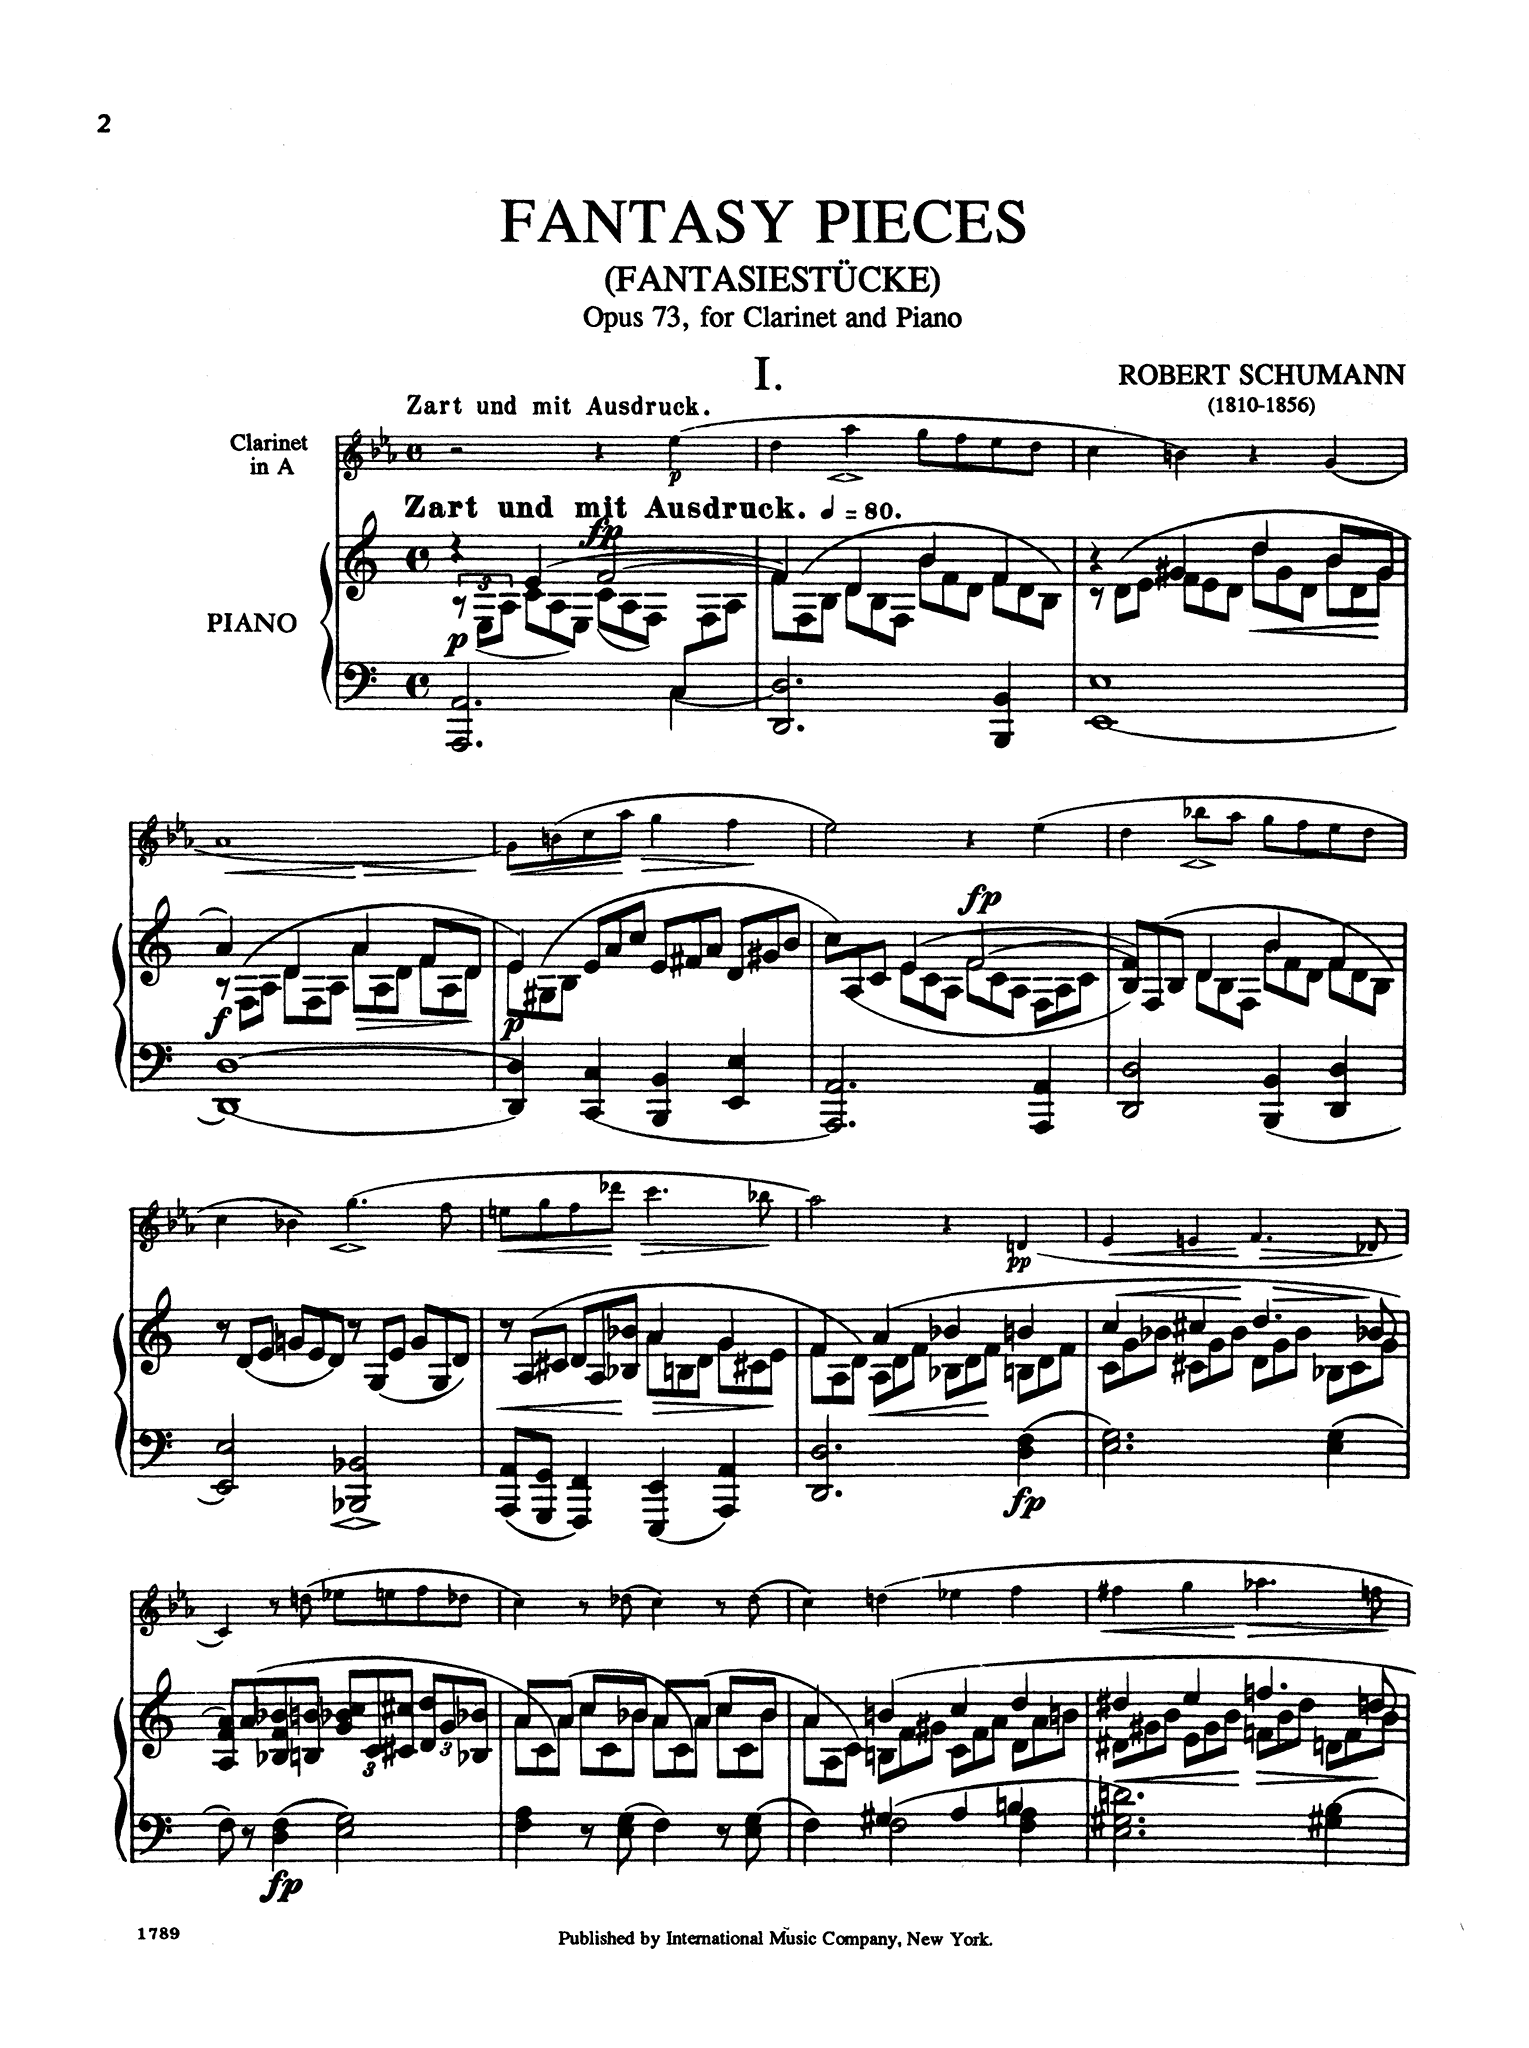 Fantasiestücke, Op. 73 - Movement 1